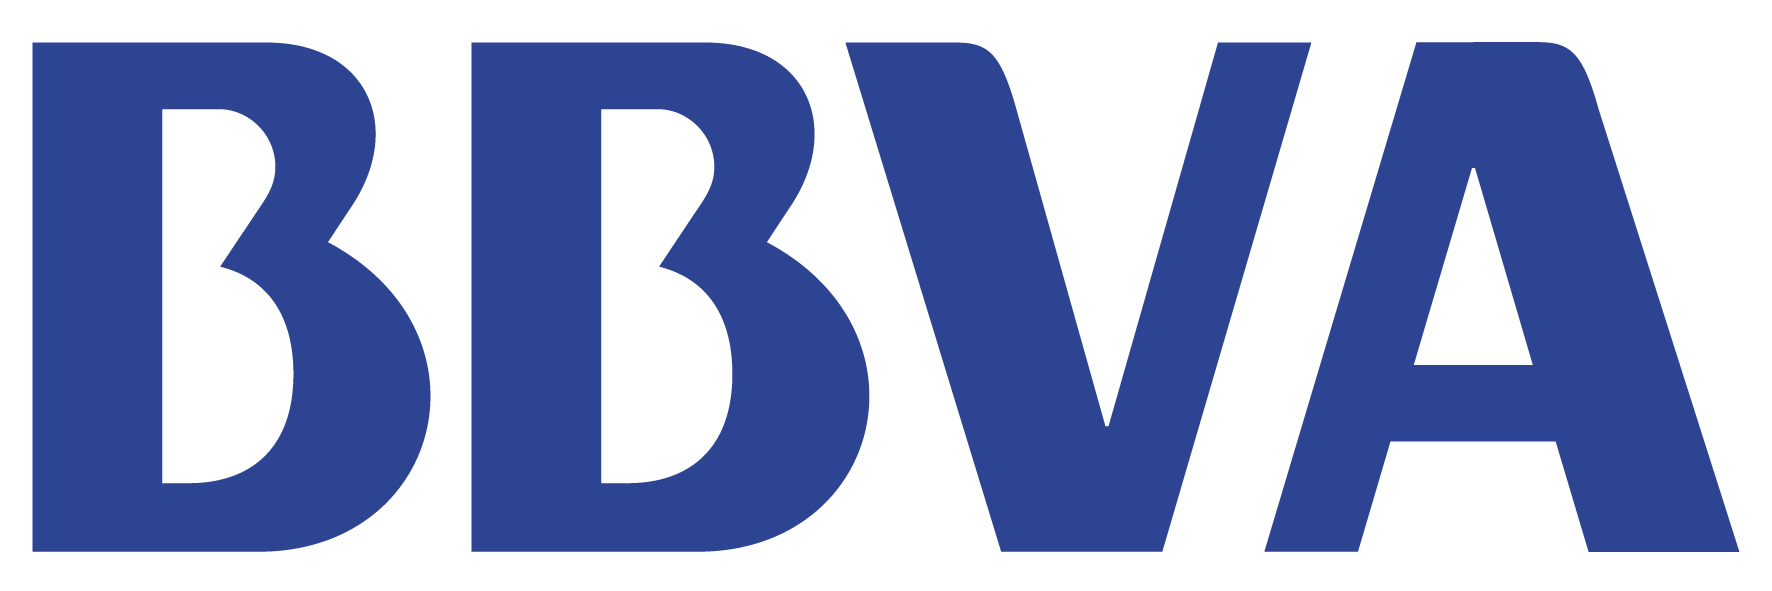 logo-bbva.jpg